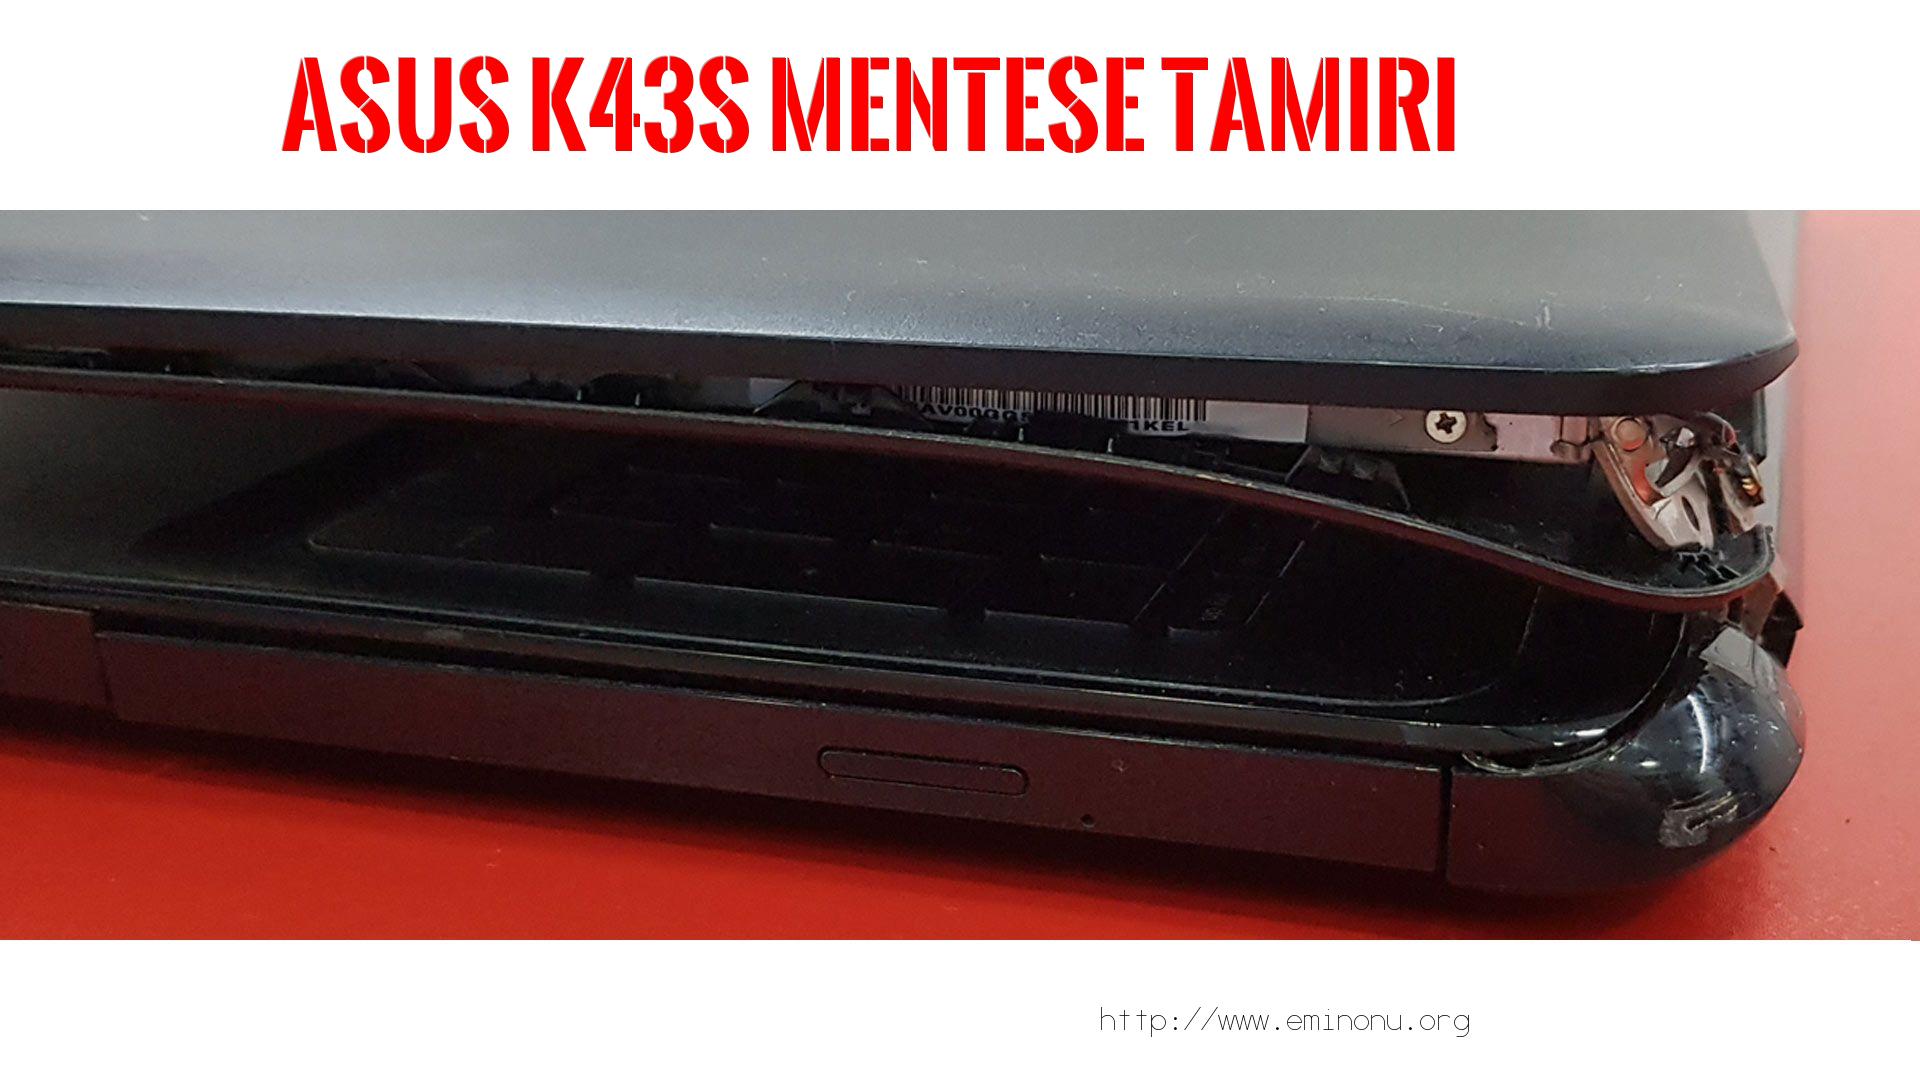 Menteşe Tamiri  Asus  K43s  MENTEŞE TAMİRİ